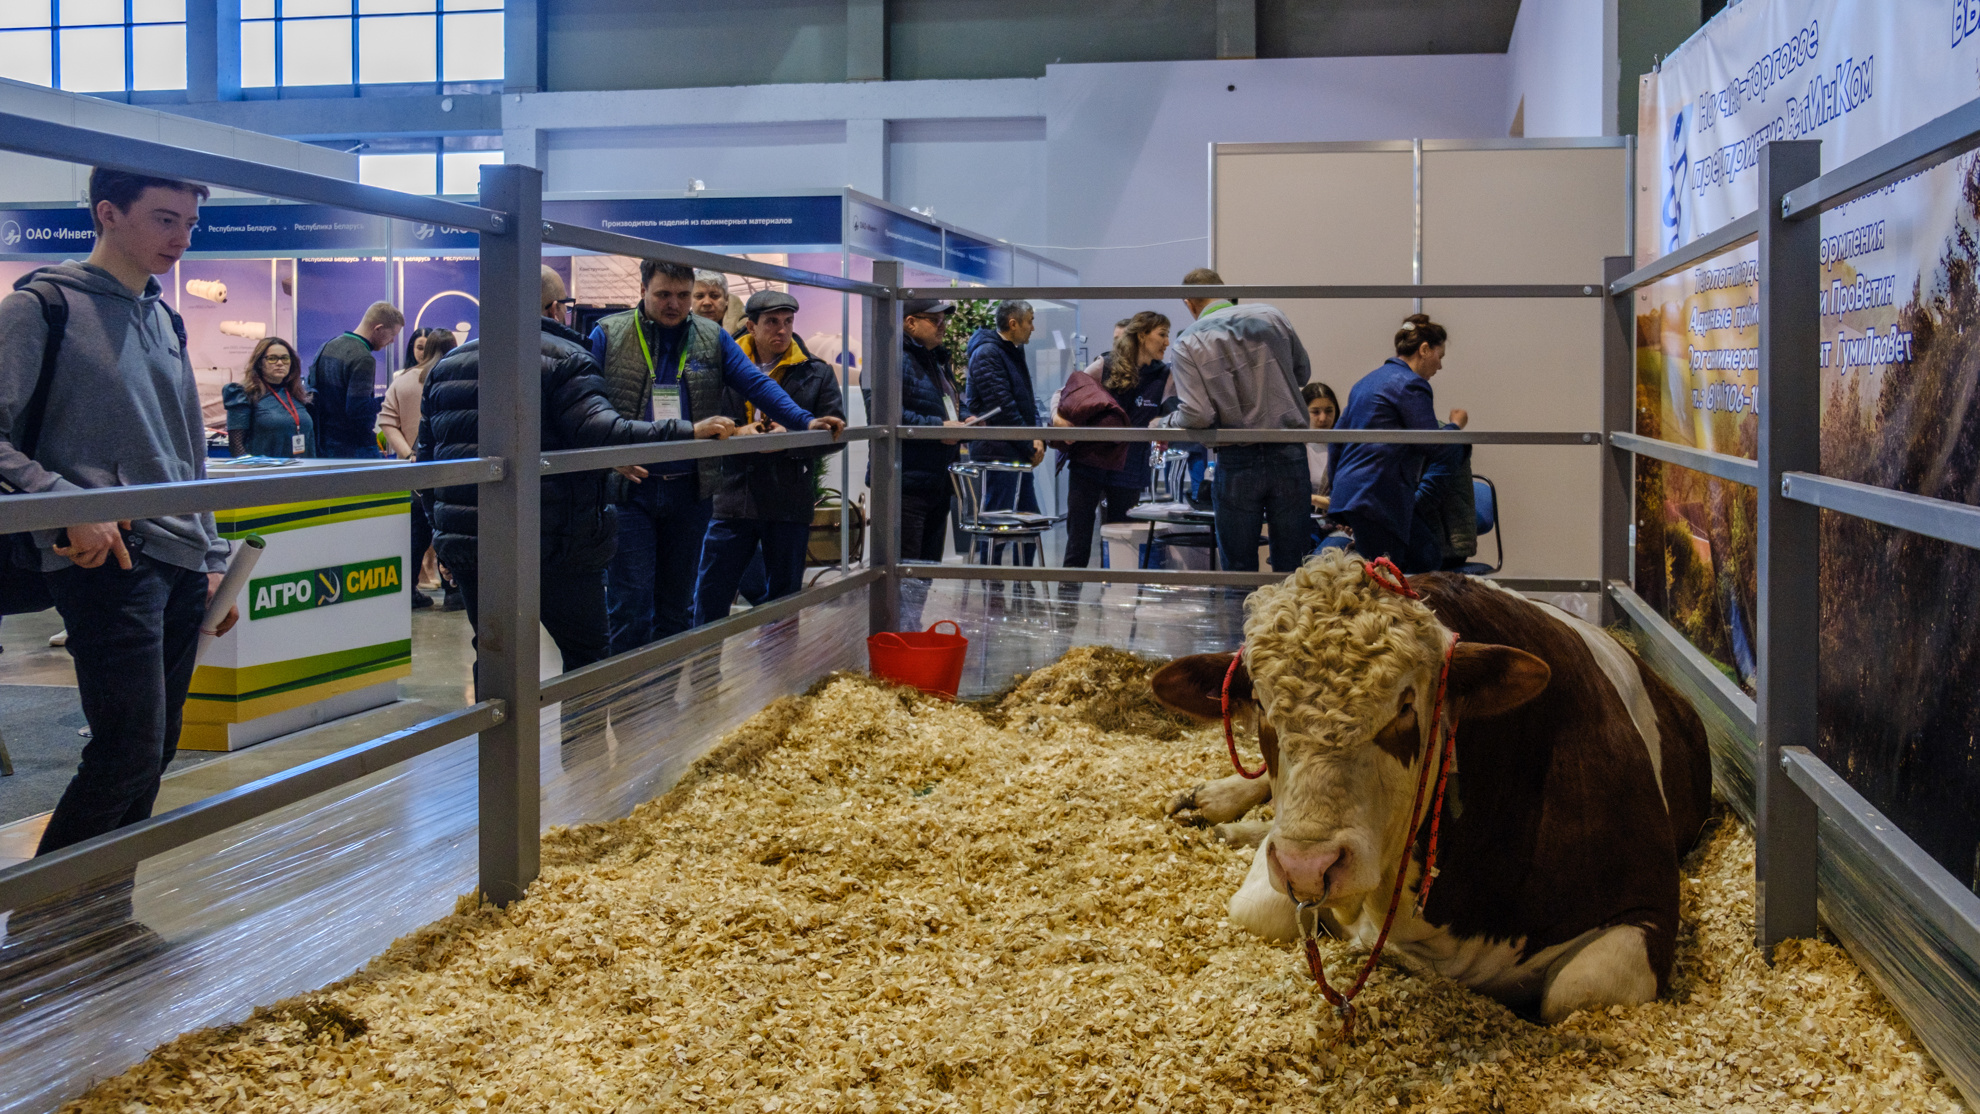 Тракторов много, а корова одна: фоторепортаж с агропромышленной выставки в Уфе